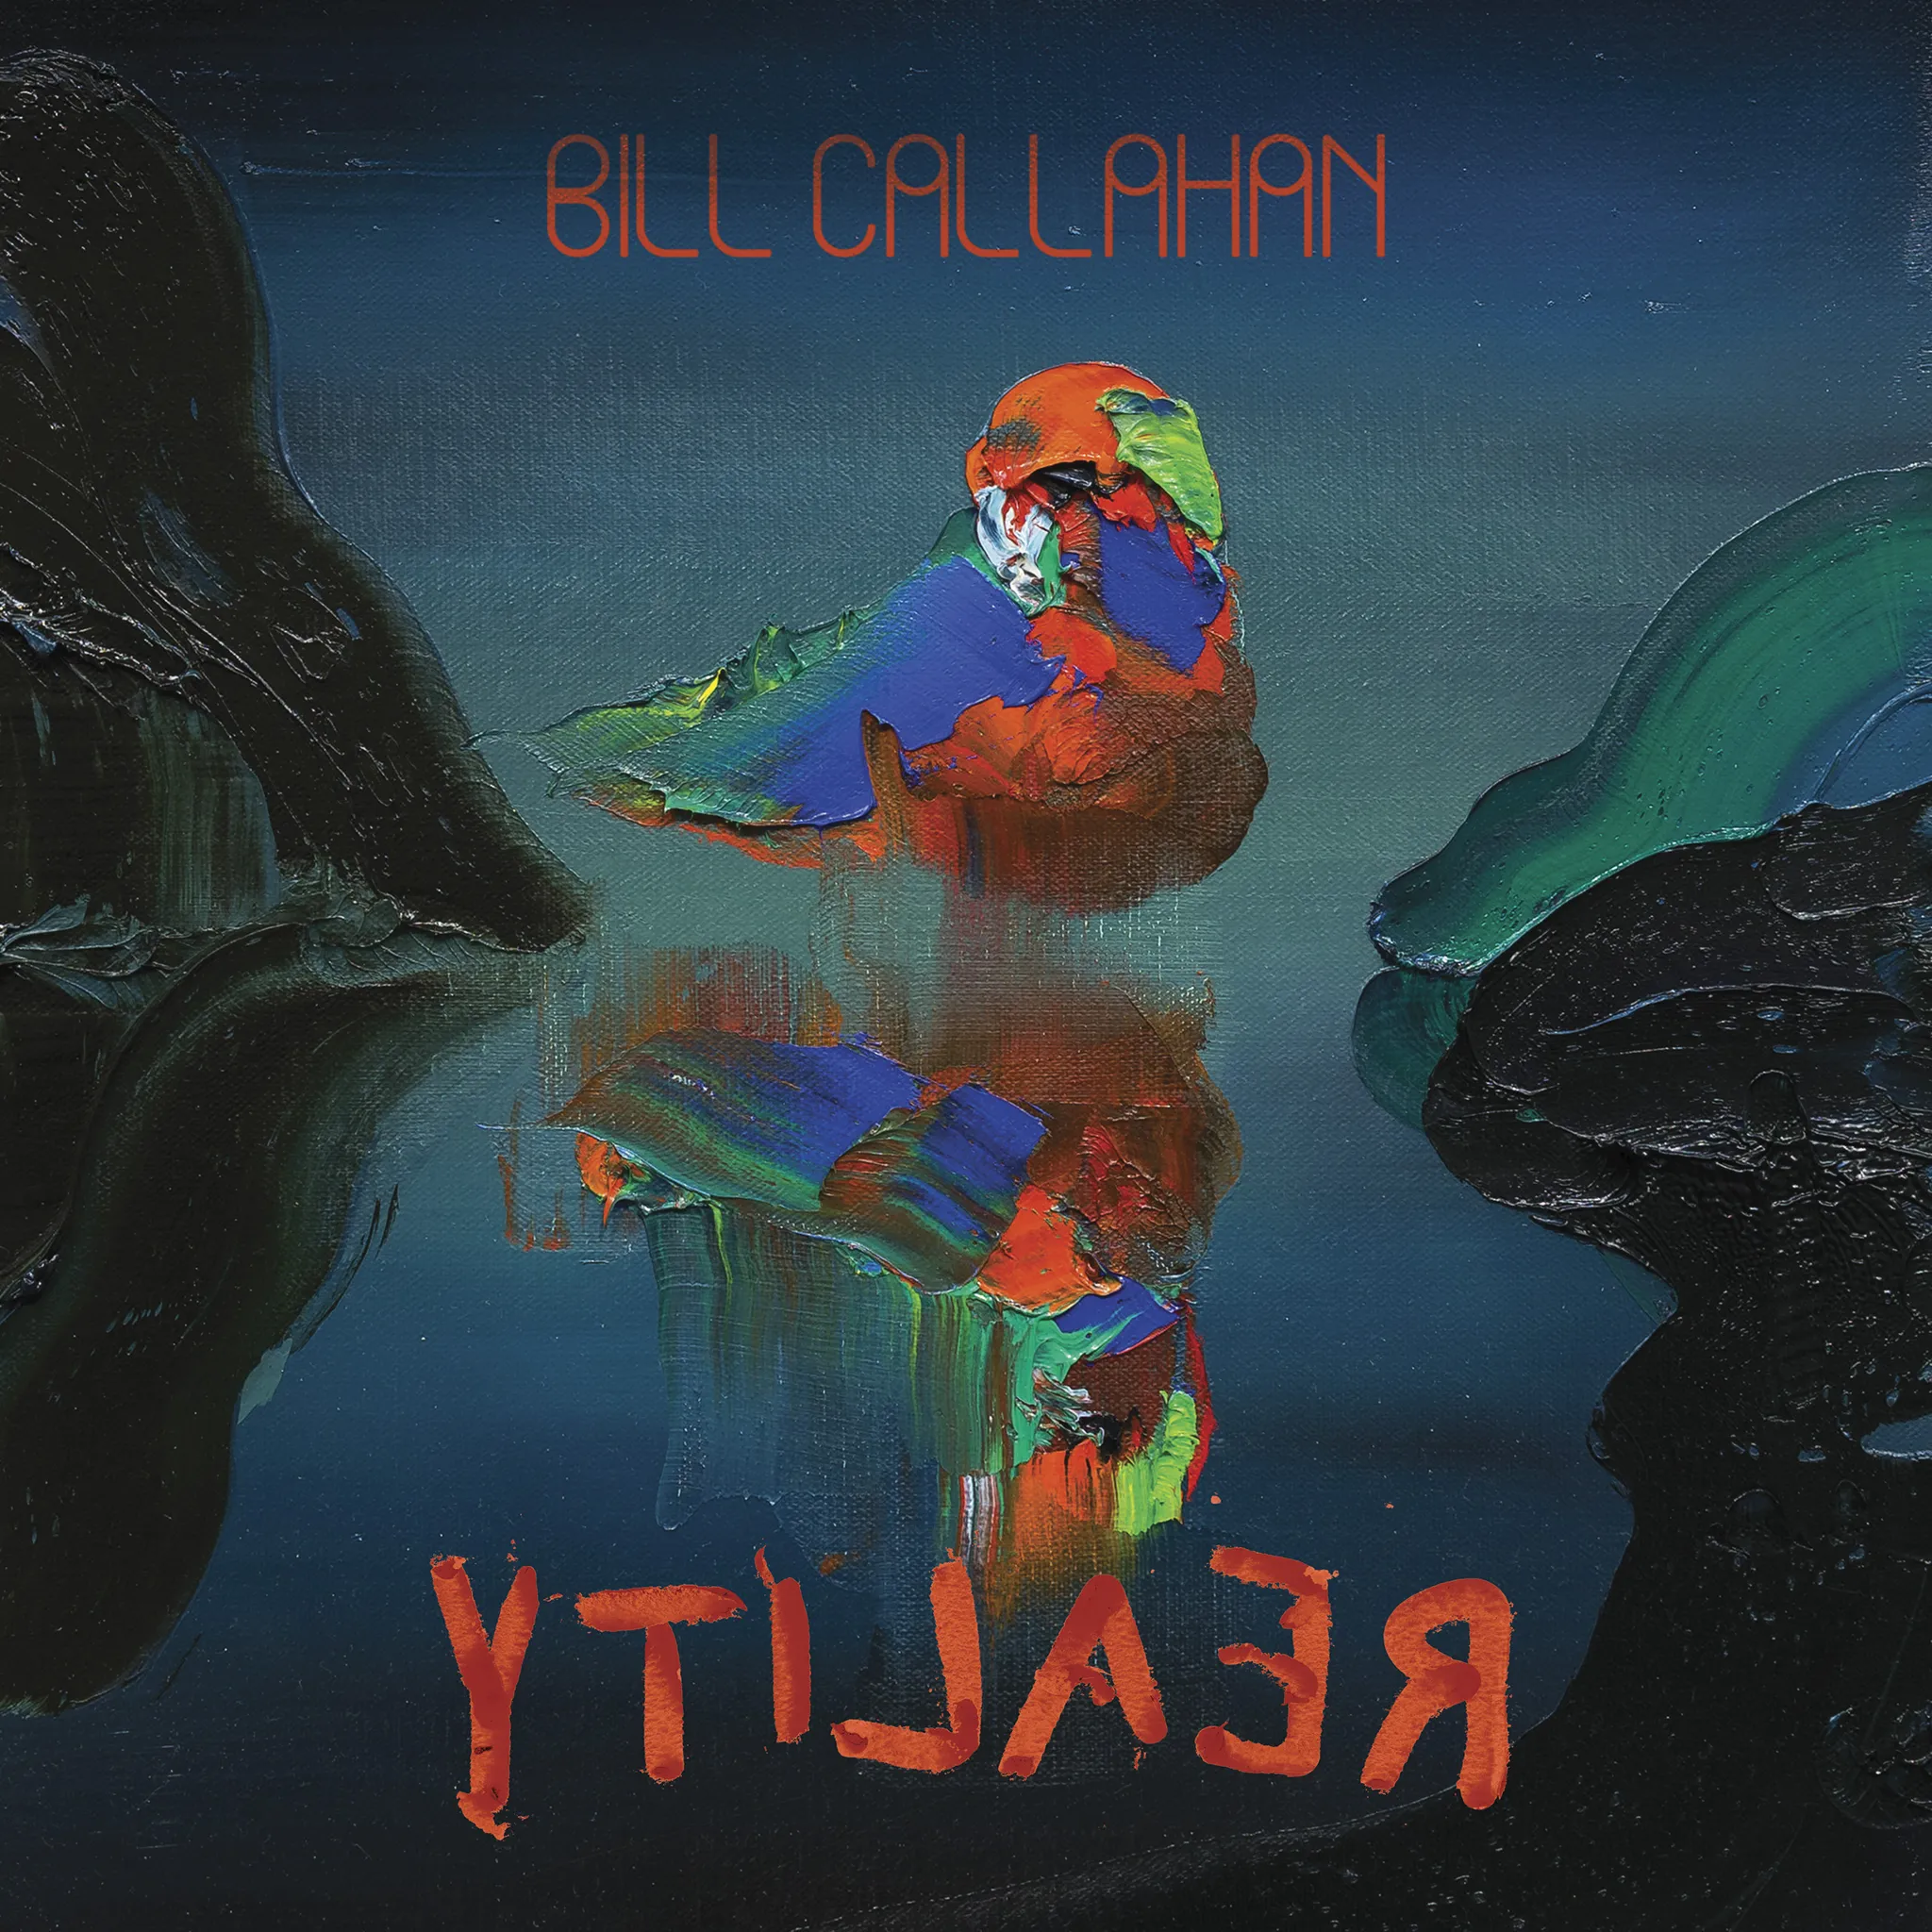 <strong>Bill Callahan - YTI⅃AƎЯ</strong> (Vinyl LP - black)